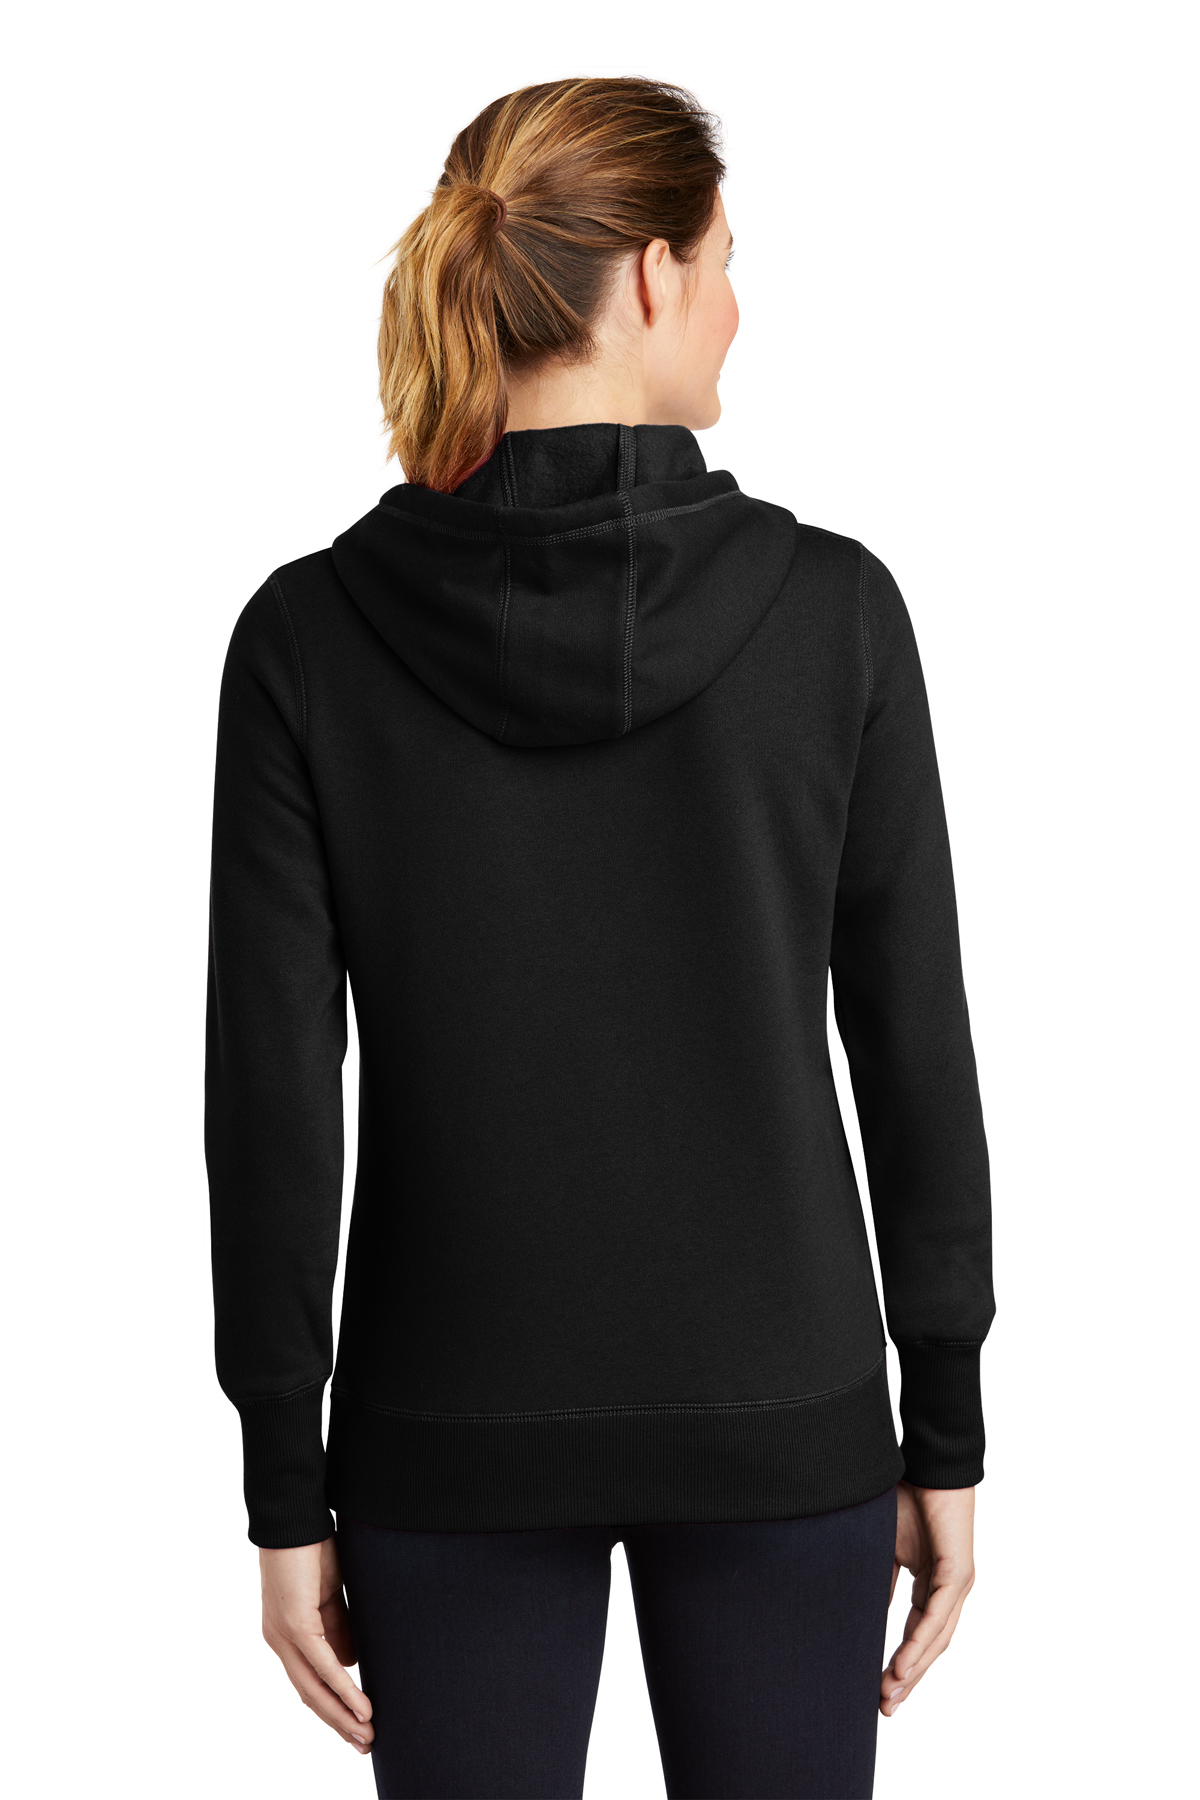 Sport-Tek Ladies Pullover Hooded Sweatshirt | Product | SanMar